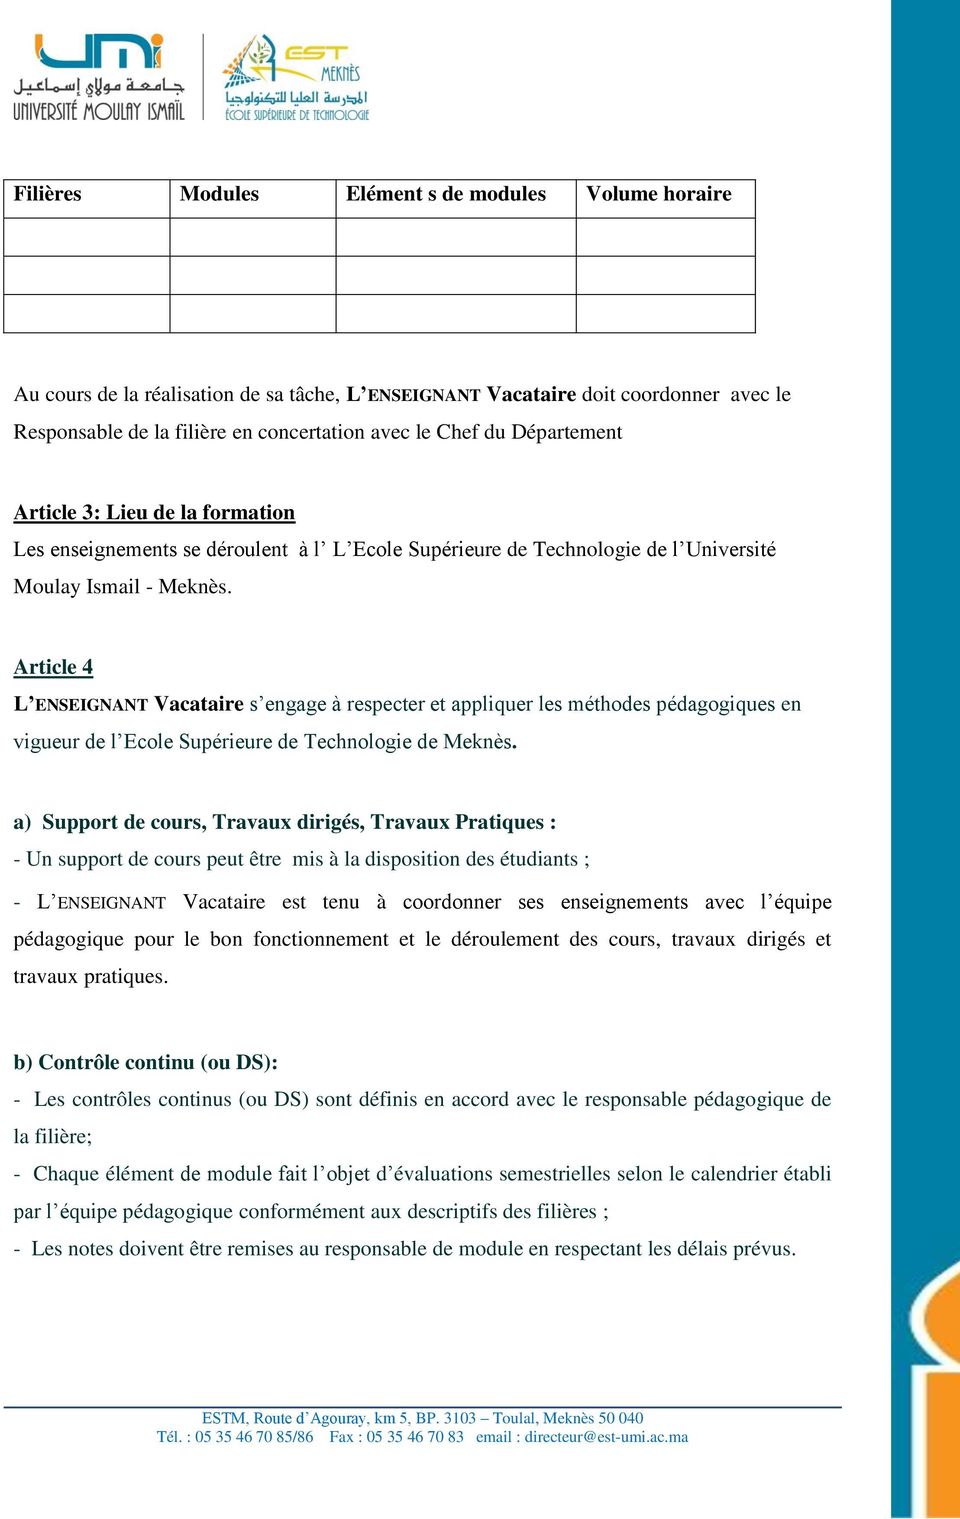 Article 4 L ENSEIGNANT Vacataire s engage à respecter et appliquer les méthodes pédagogiques en vigueur de l Ecole Supérieure de Technologie de Meknès.